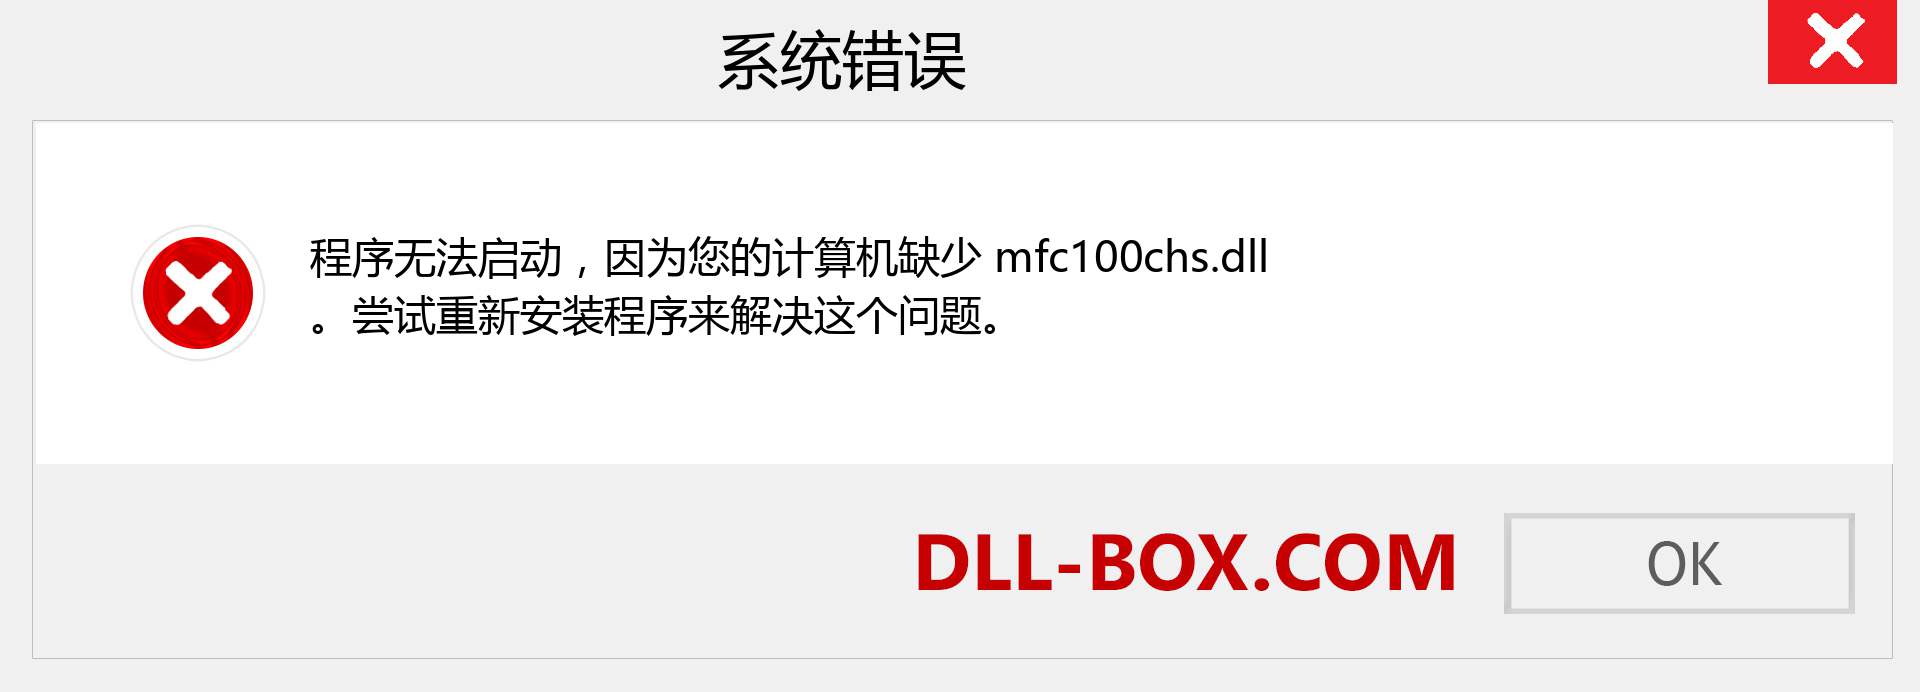 mfc100chs.dll 文件丢失？。 适用于 Windows 7、8、10 的下载 - 修复 Windows、照片、图像上的 mfc100chs dll 丢失错误